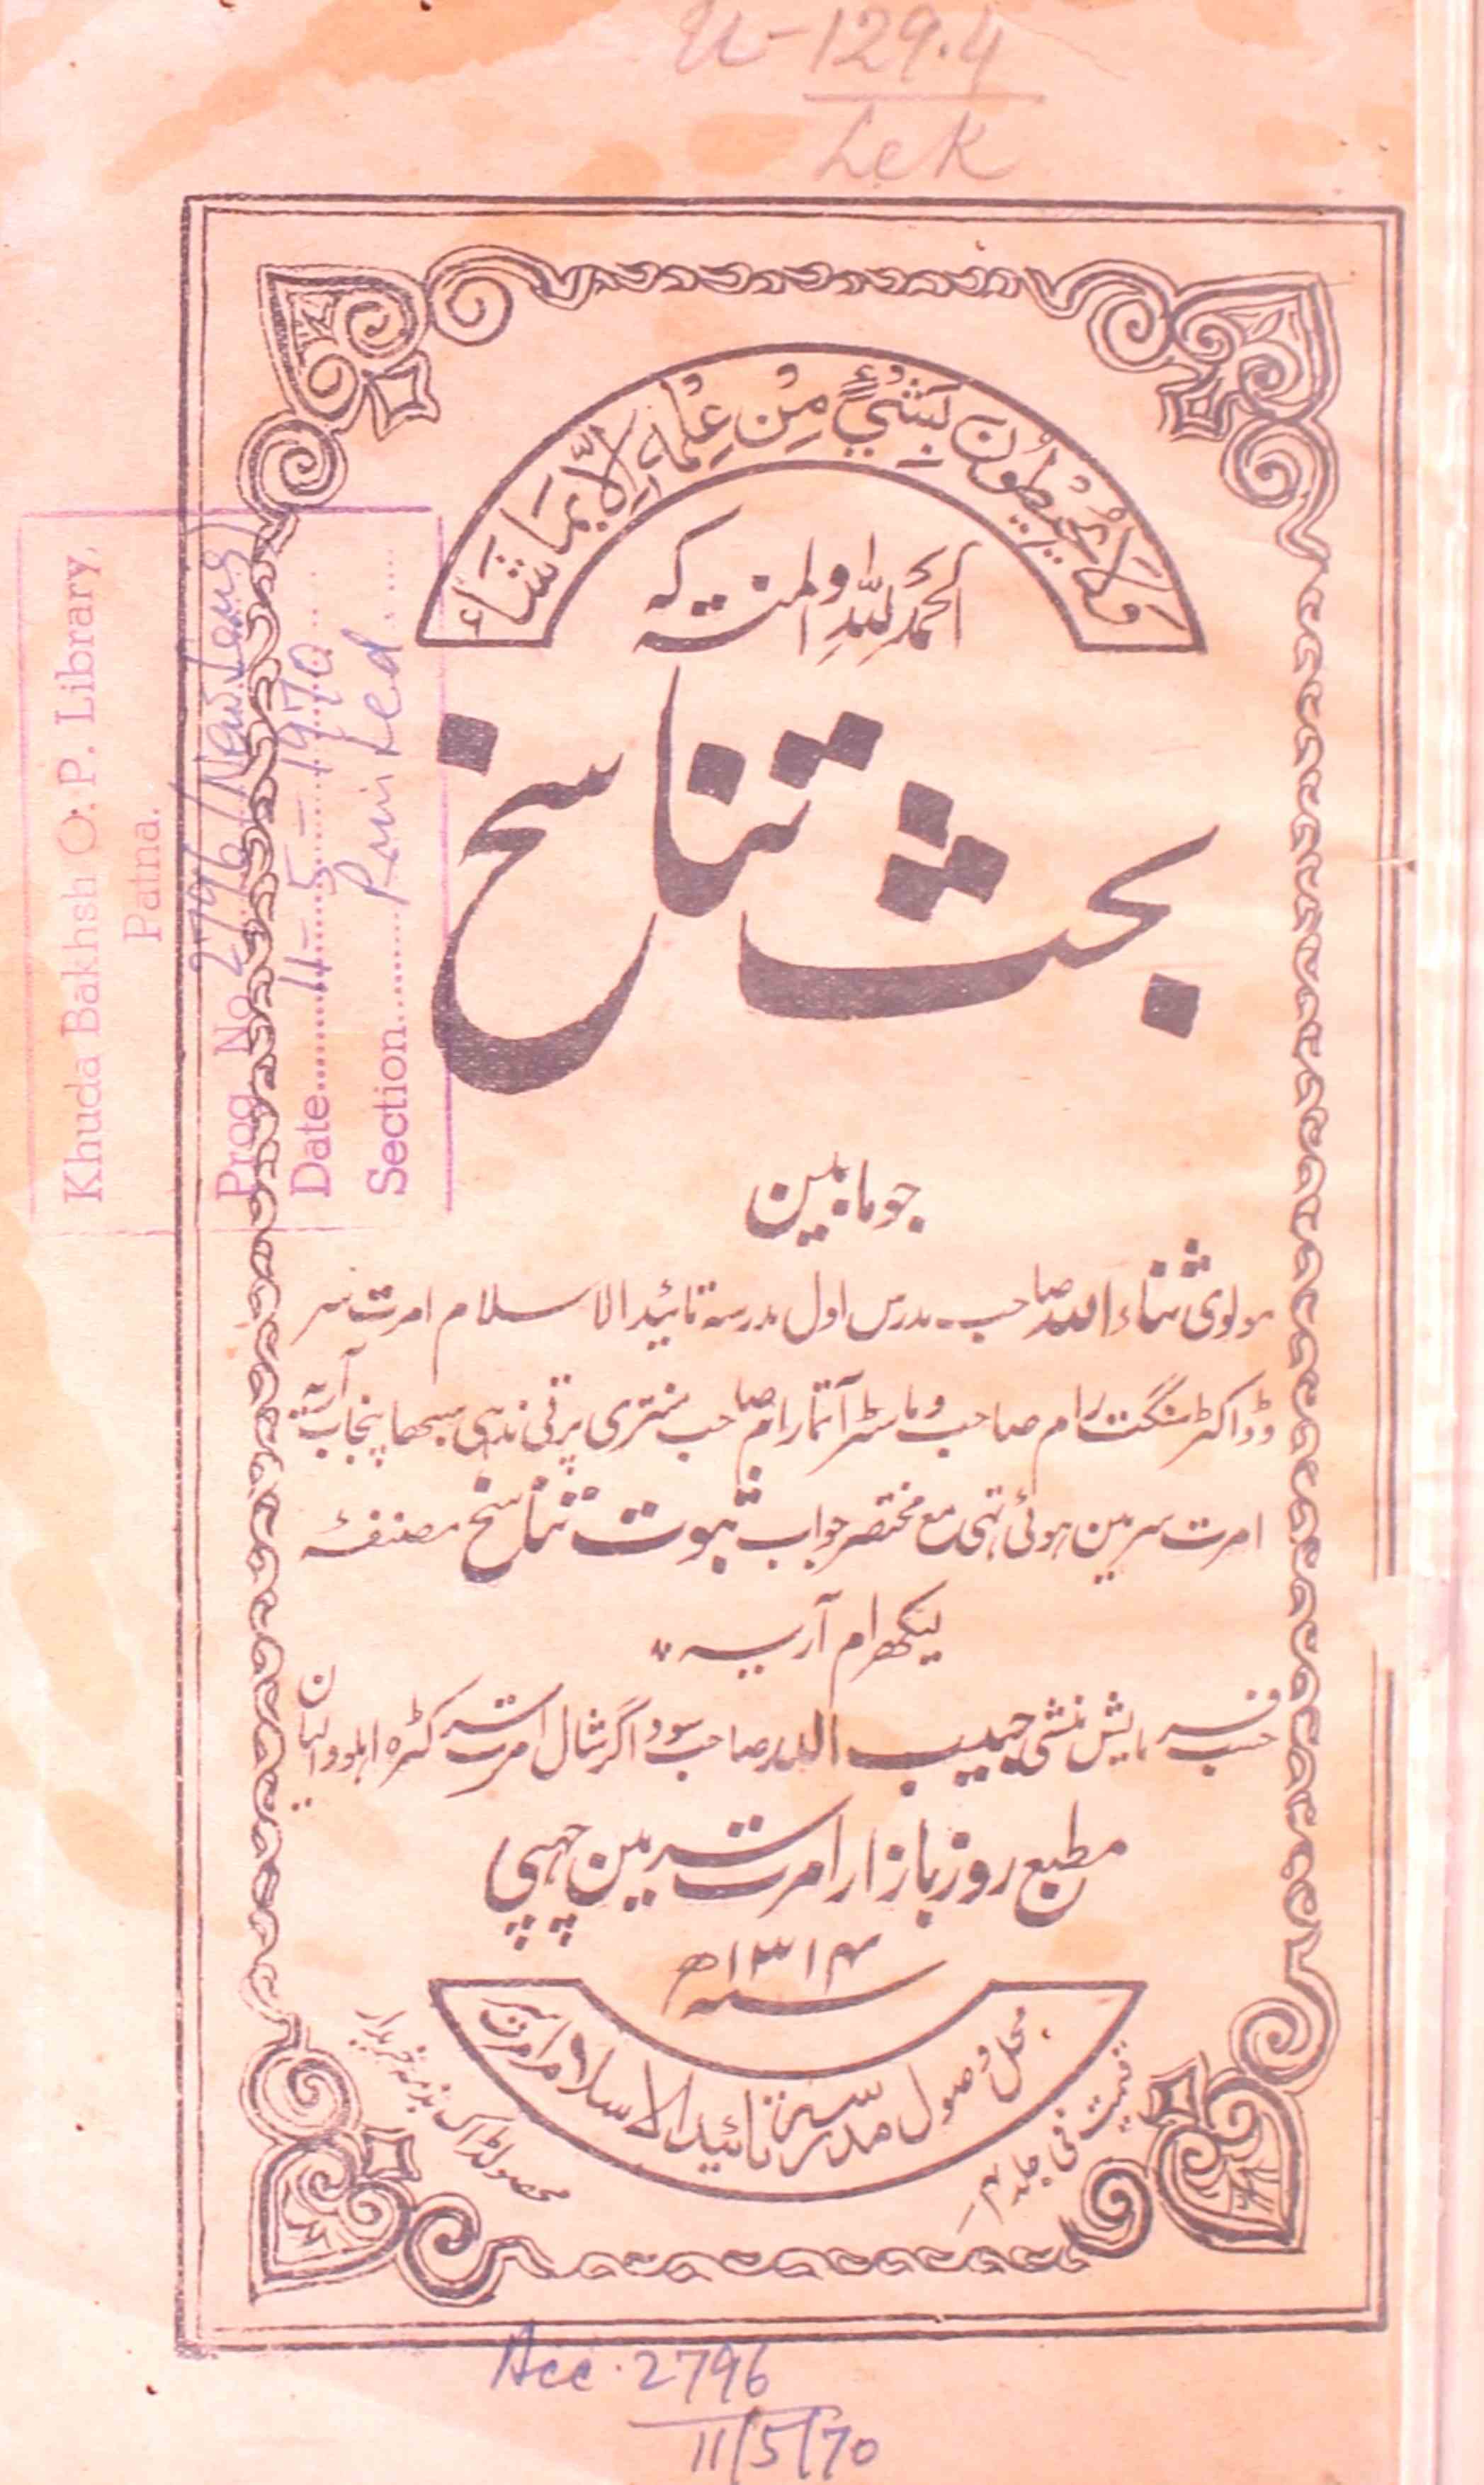 Bahs-e-Tanasukh